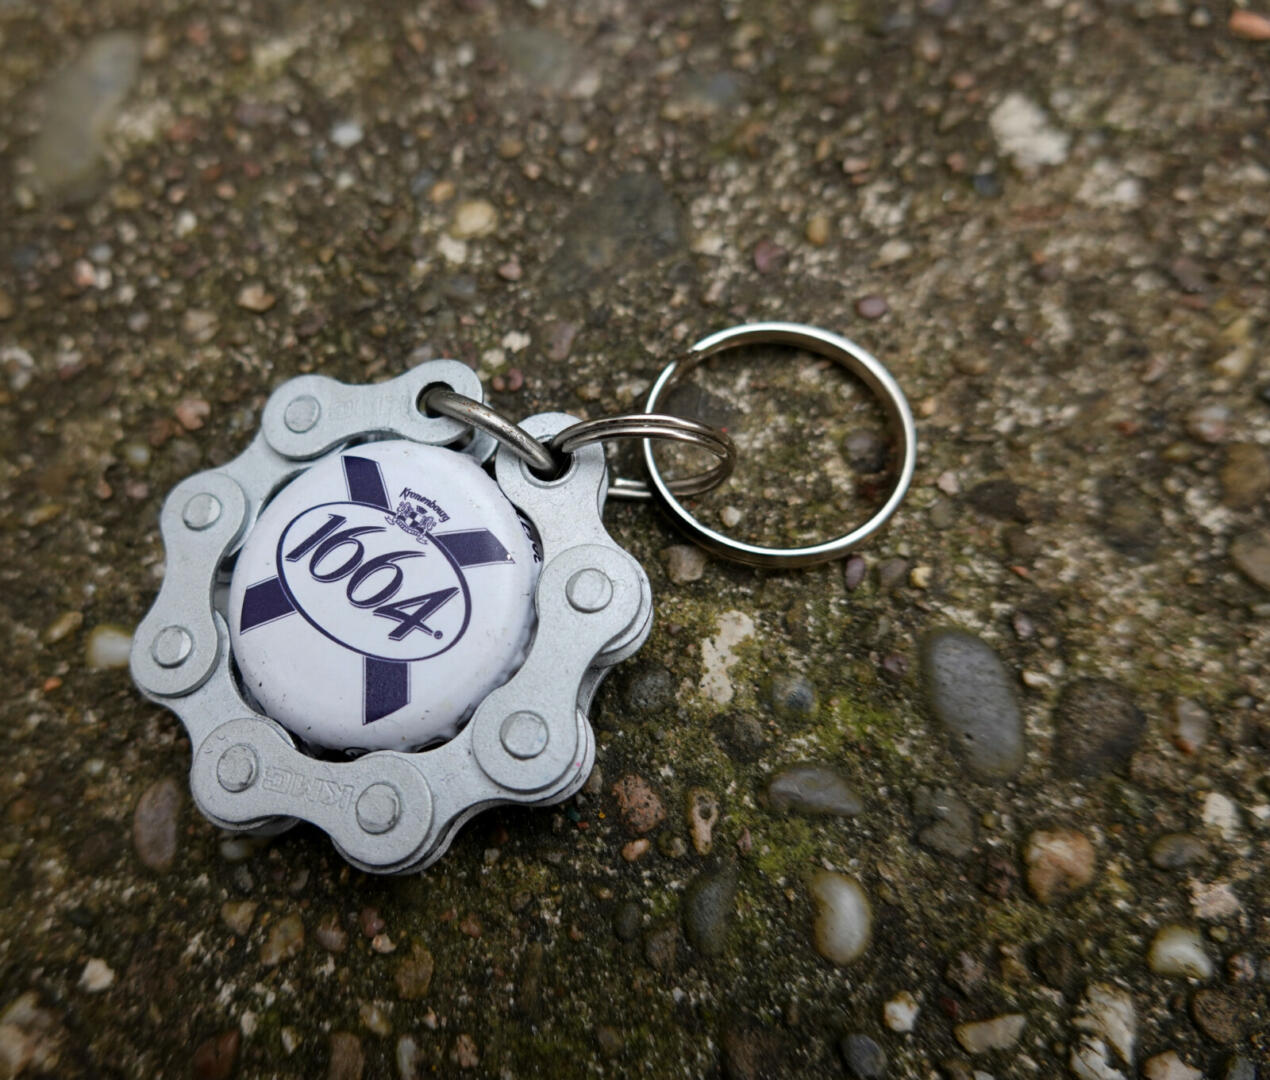 Porte-clés chaîne + capsule 1664